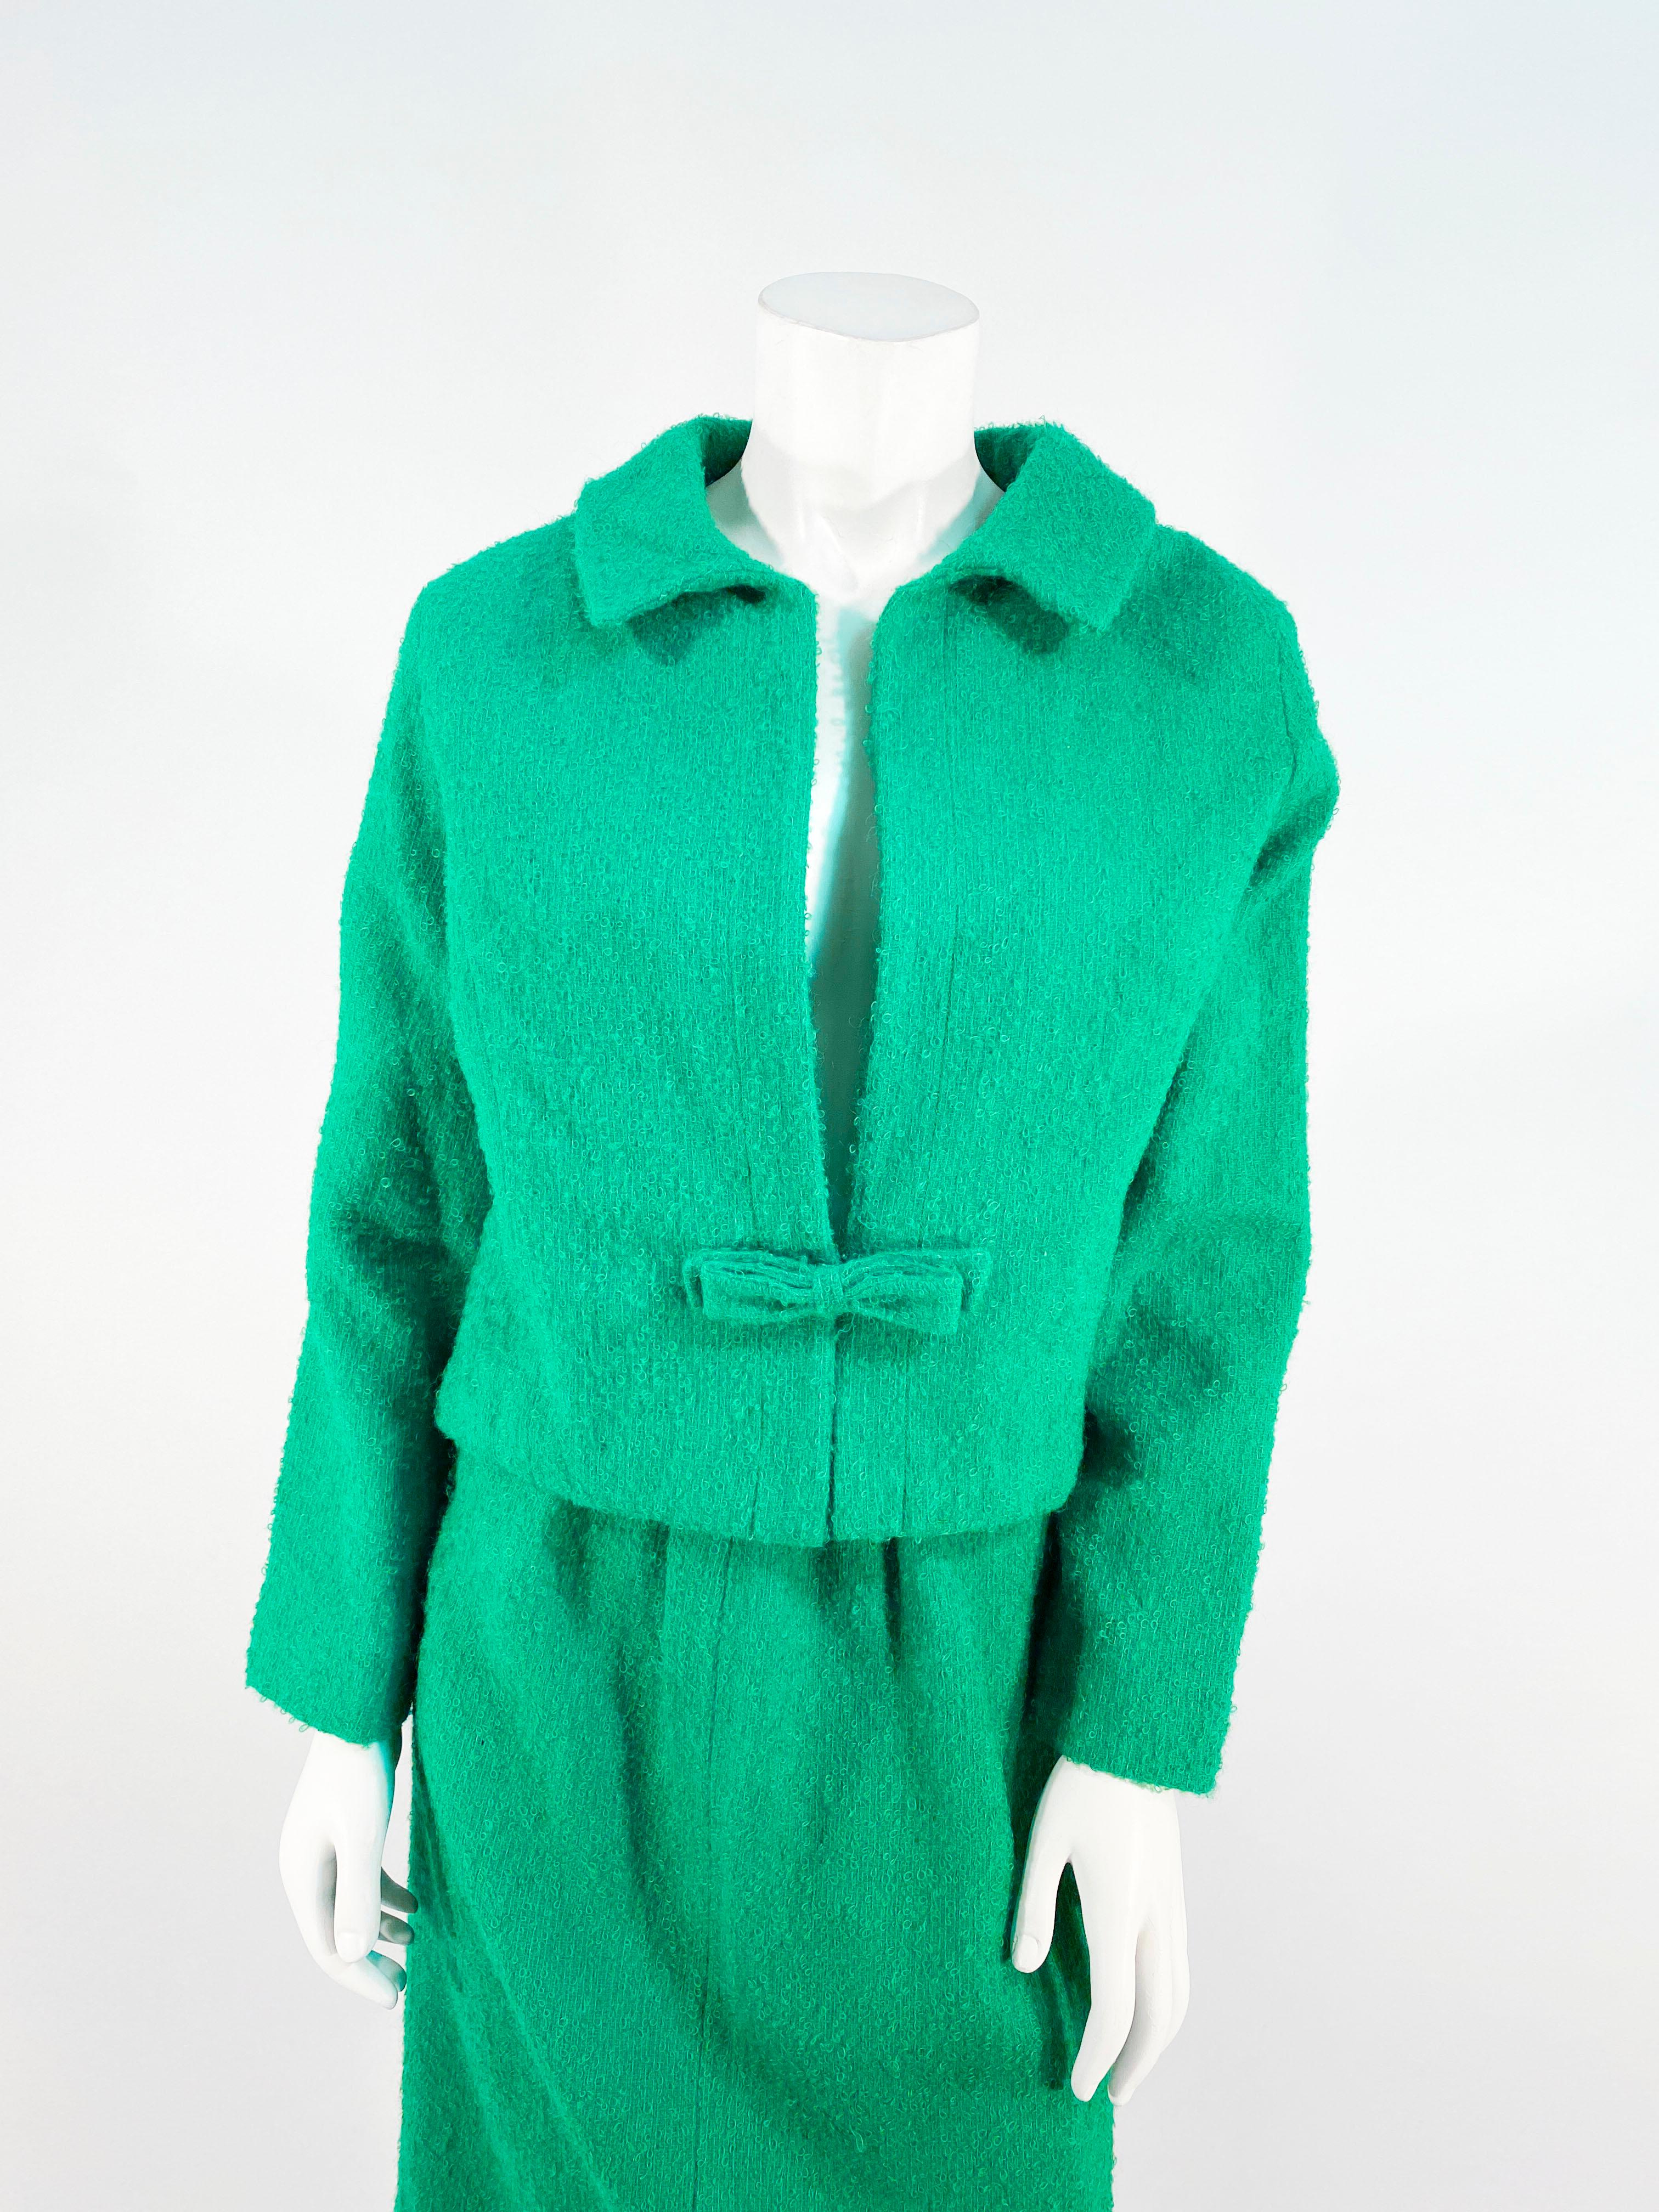 costume en mohair vert kelly des années 1980 de la marque Saks Fifth Ave. La veste est de type boîte avec des manches longues, une doublure intérieure et une fermeture à nœud qui crée un décolleté plongeant. La jupe droite a une taille appliquée.